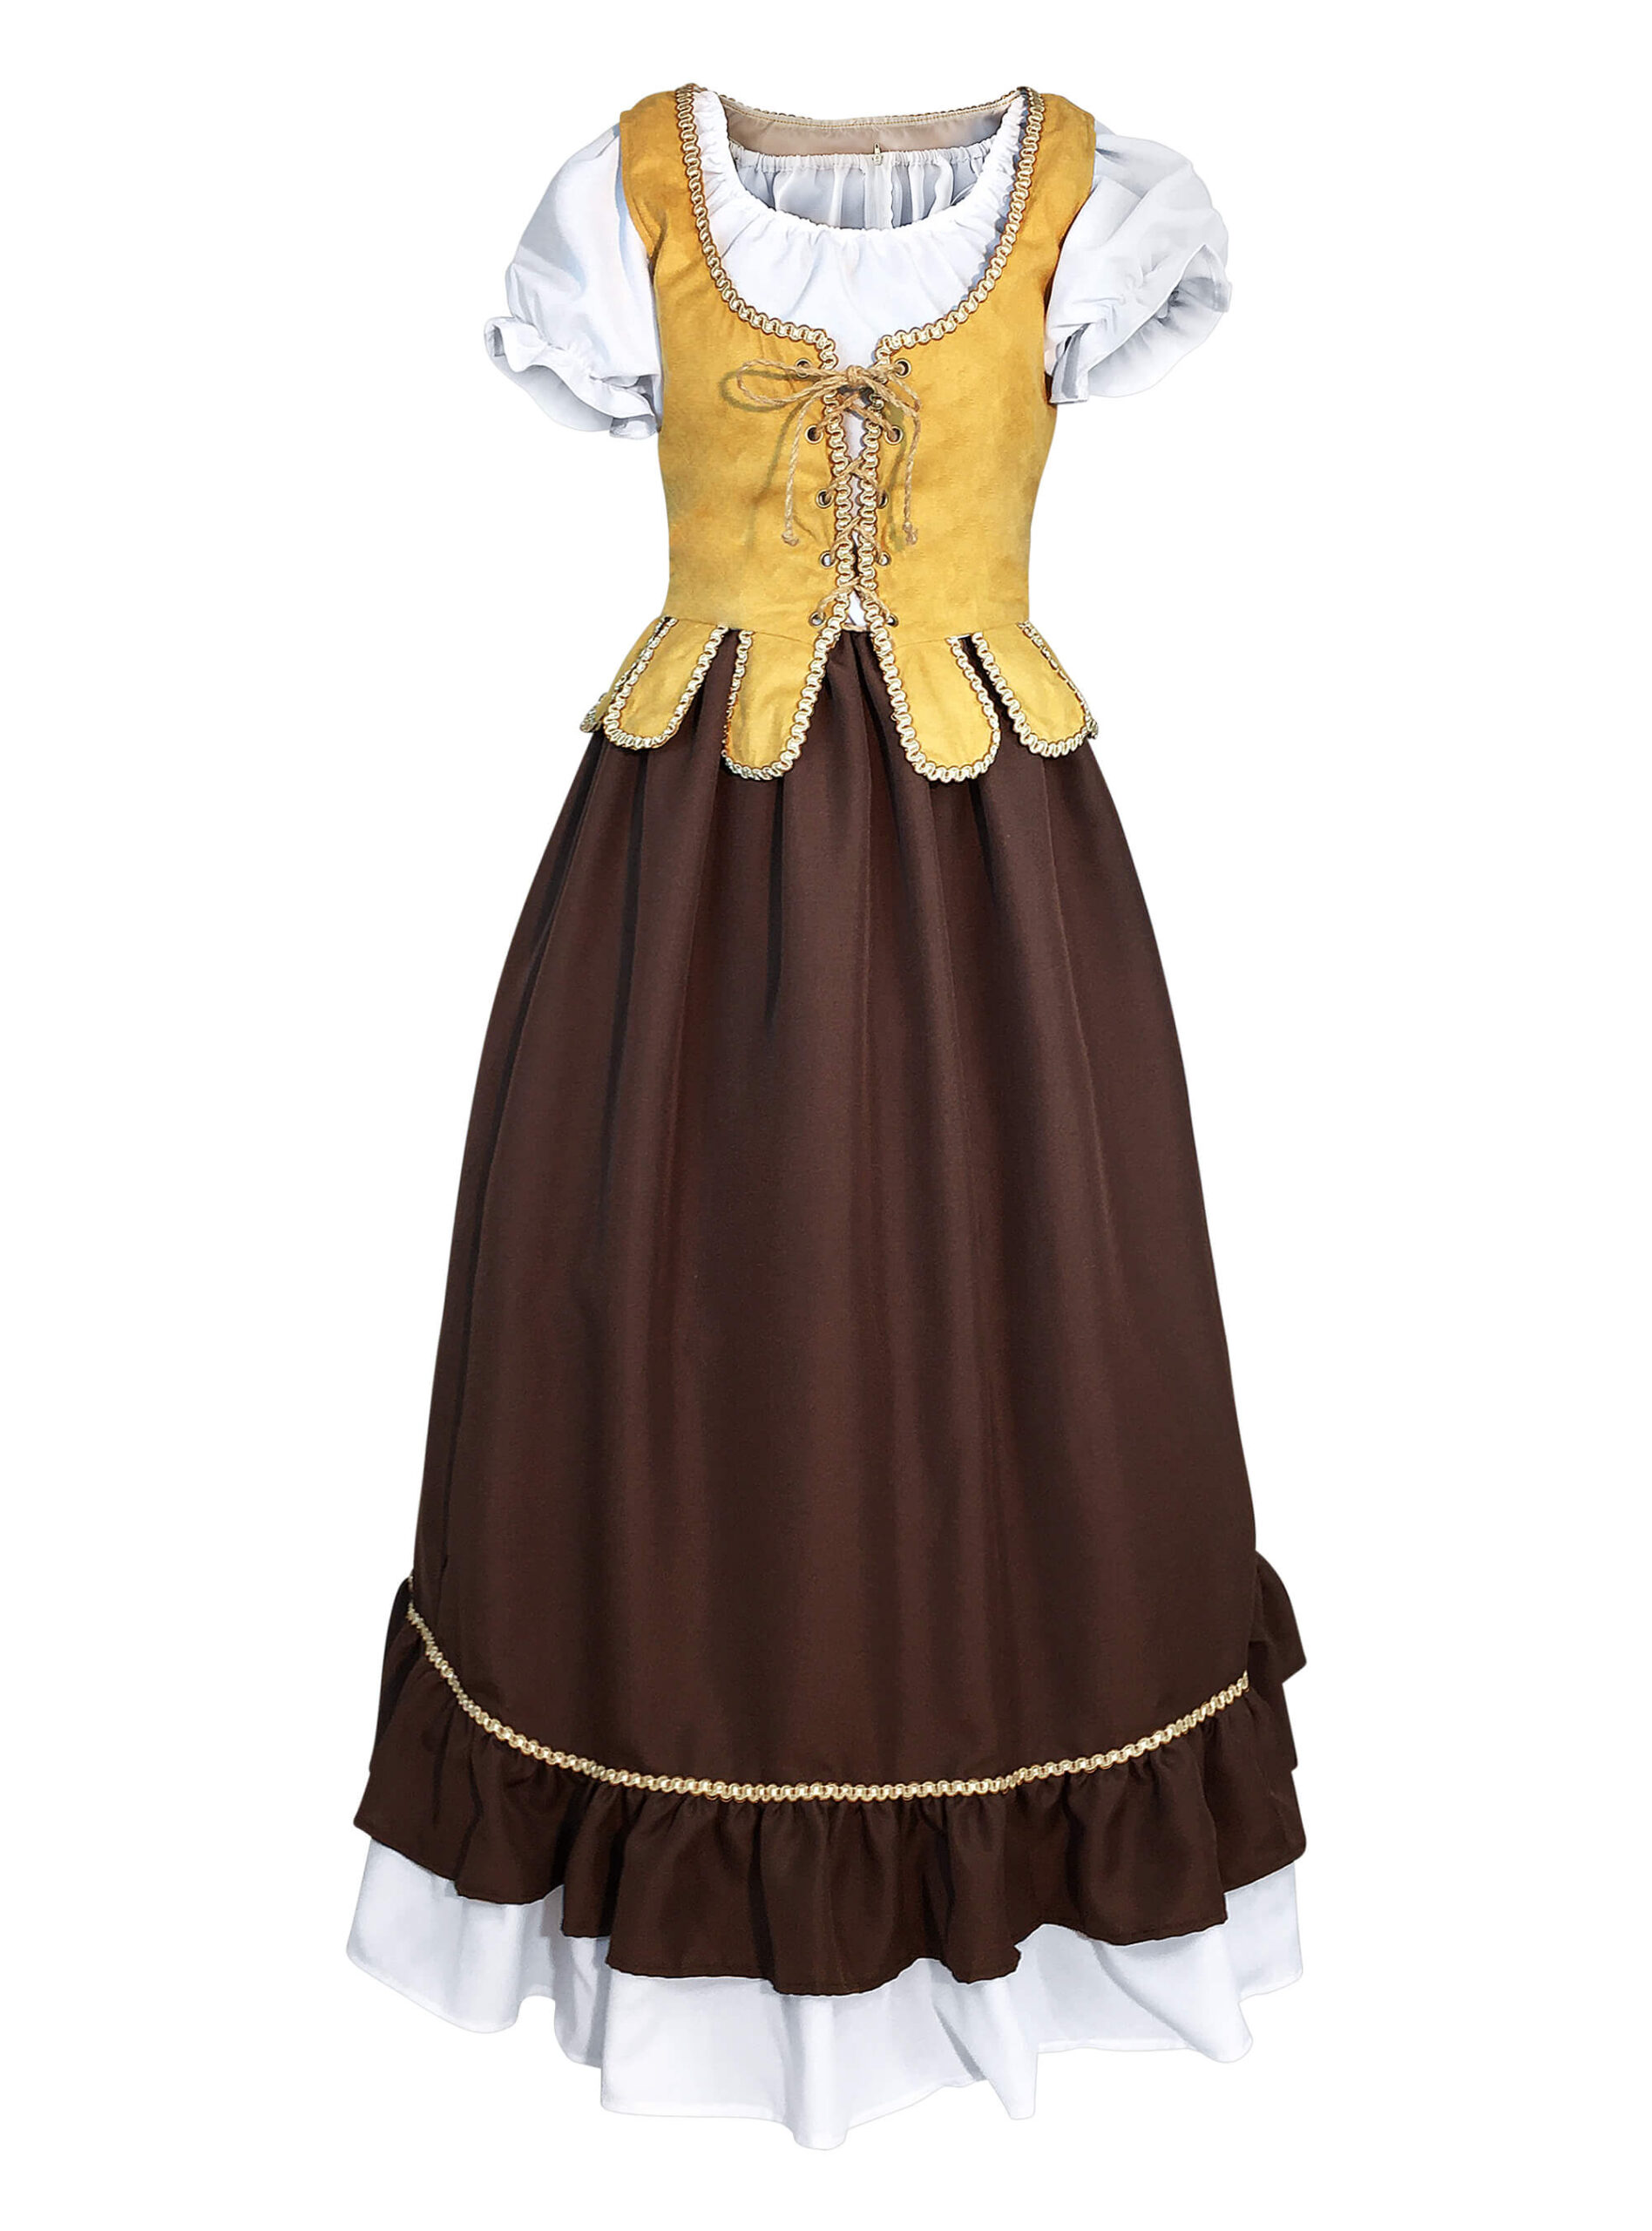 Medieval Maiden Dress